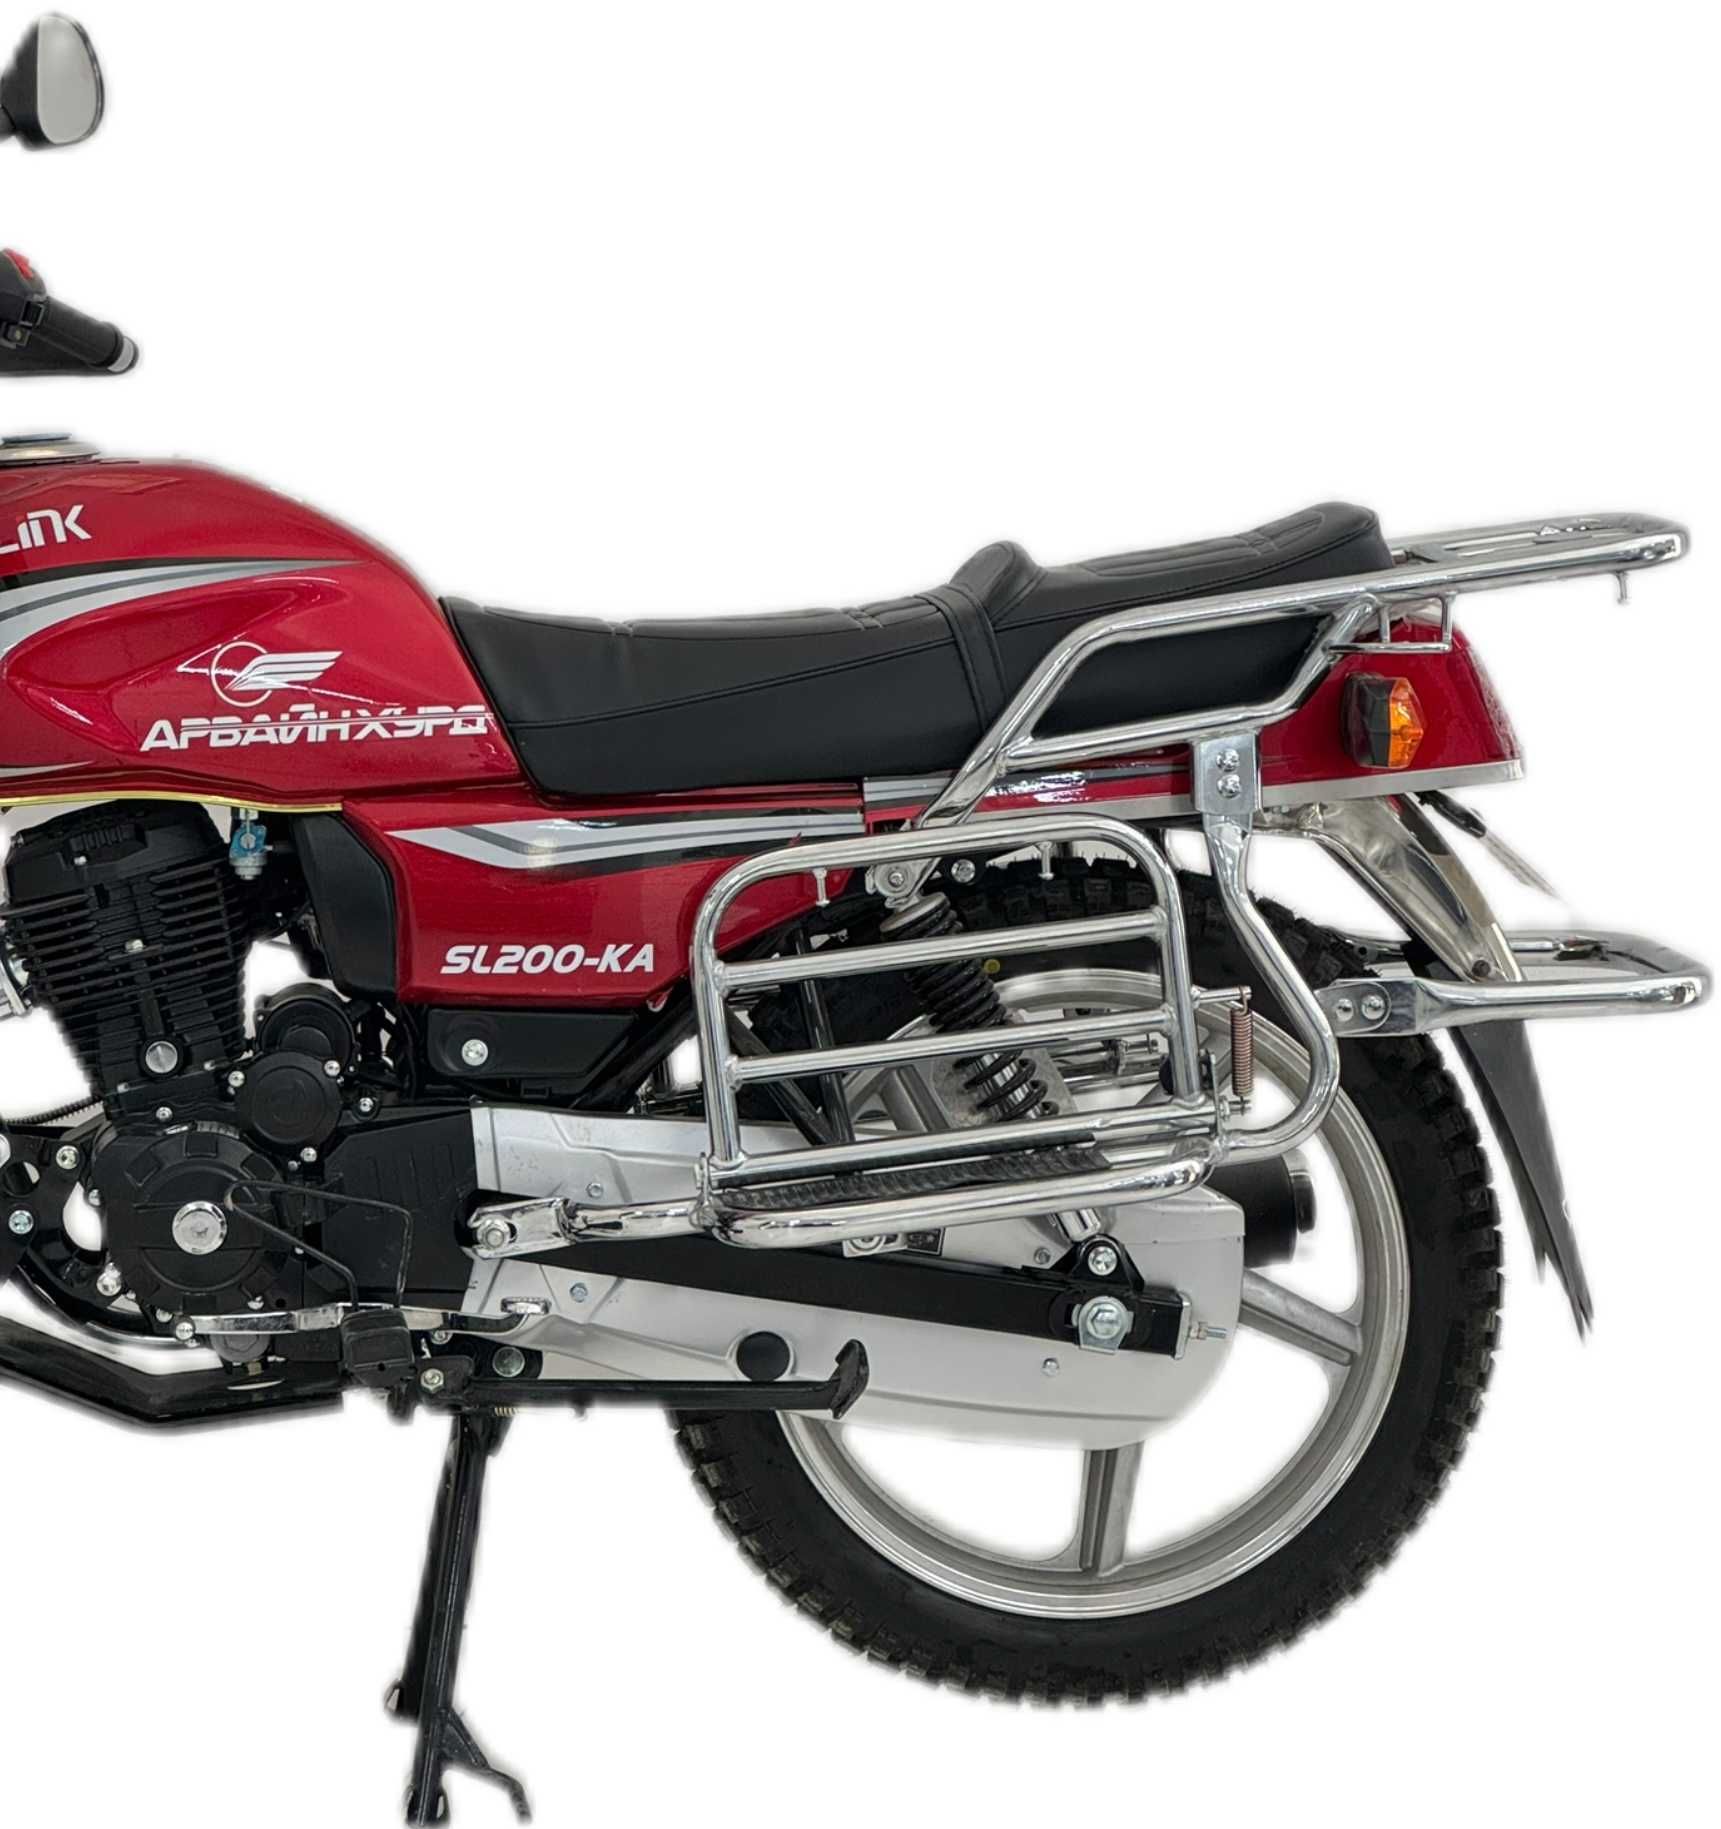 Мотоцикл 200CC Сонлинк; Мотоцикл Sonlink 200 куб;